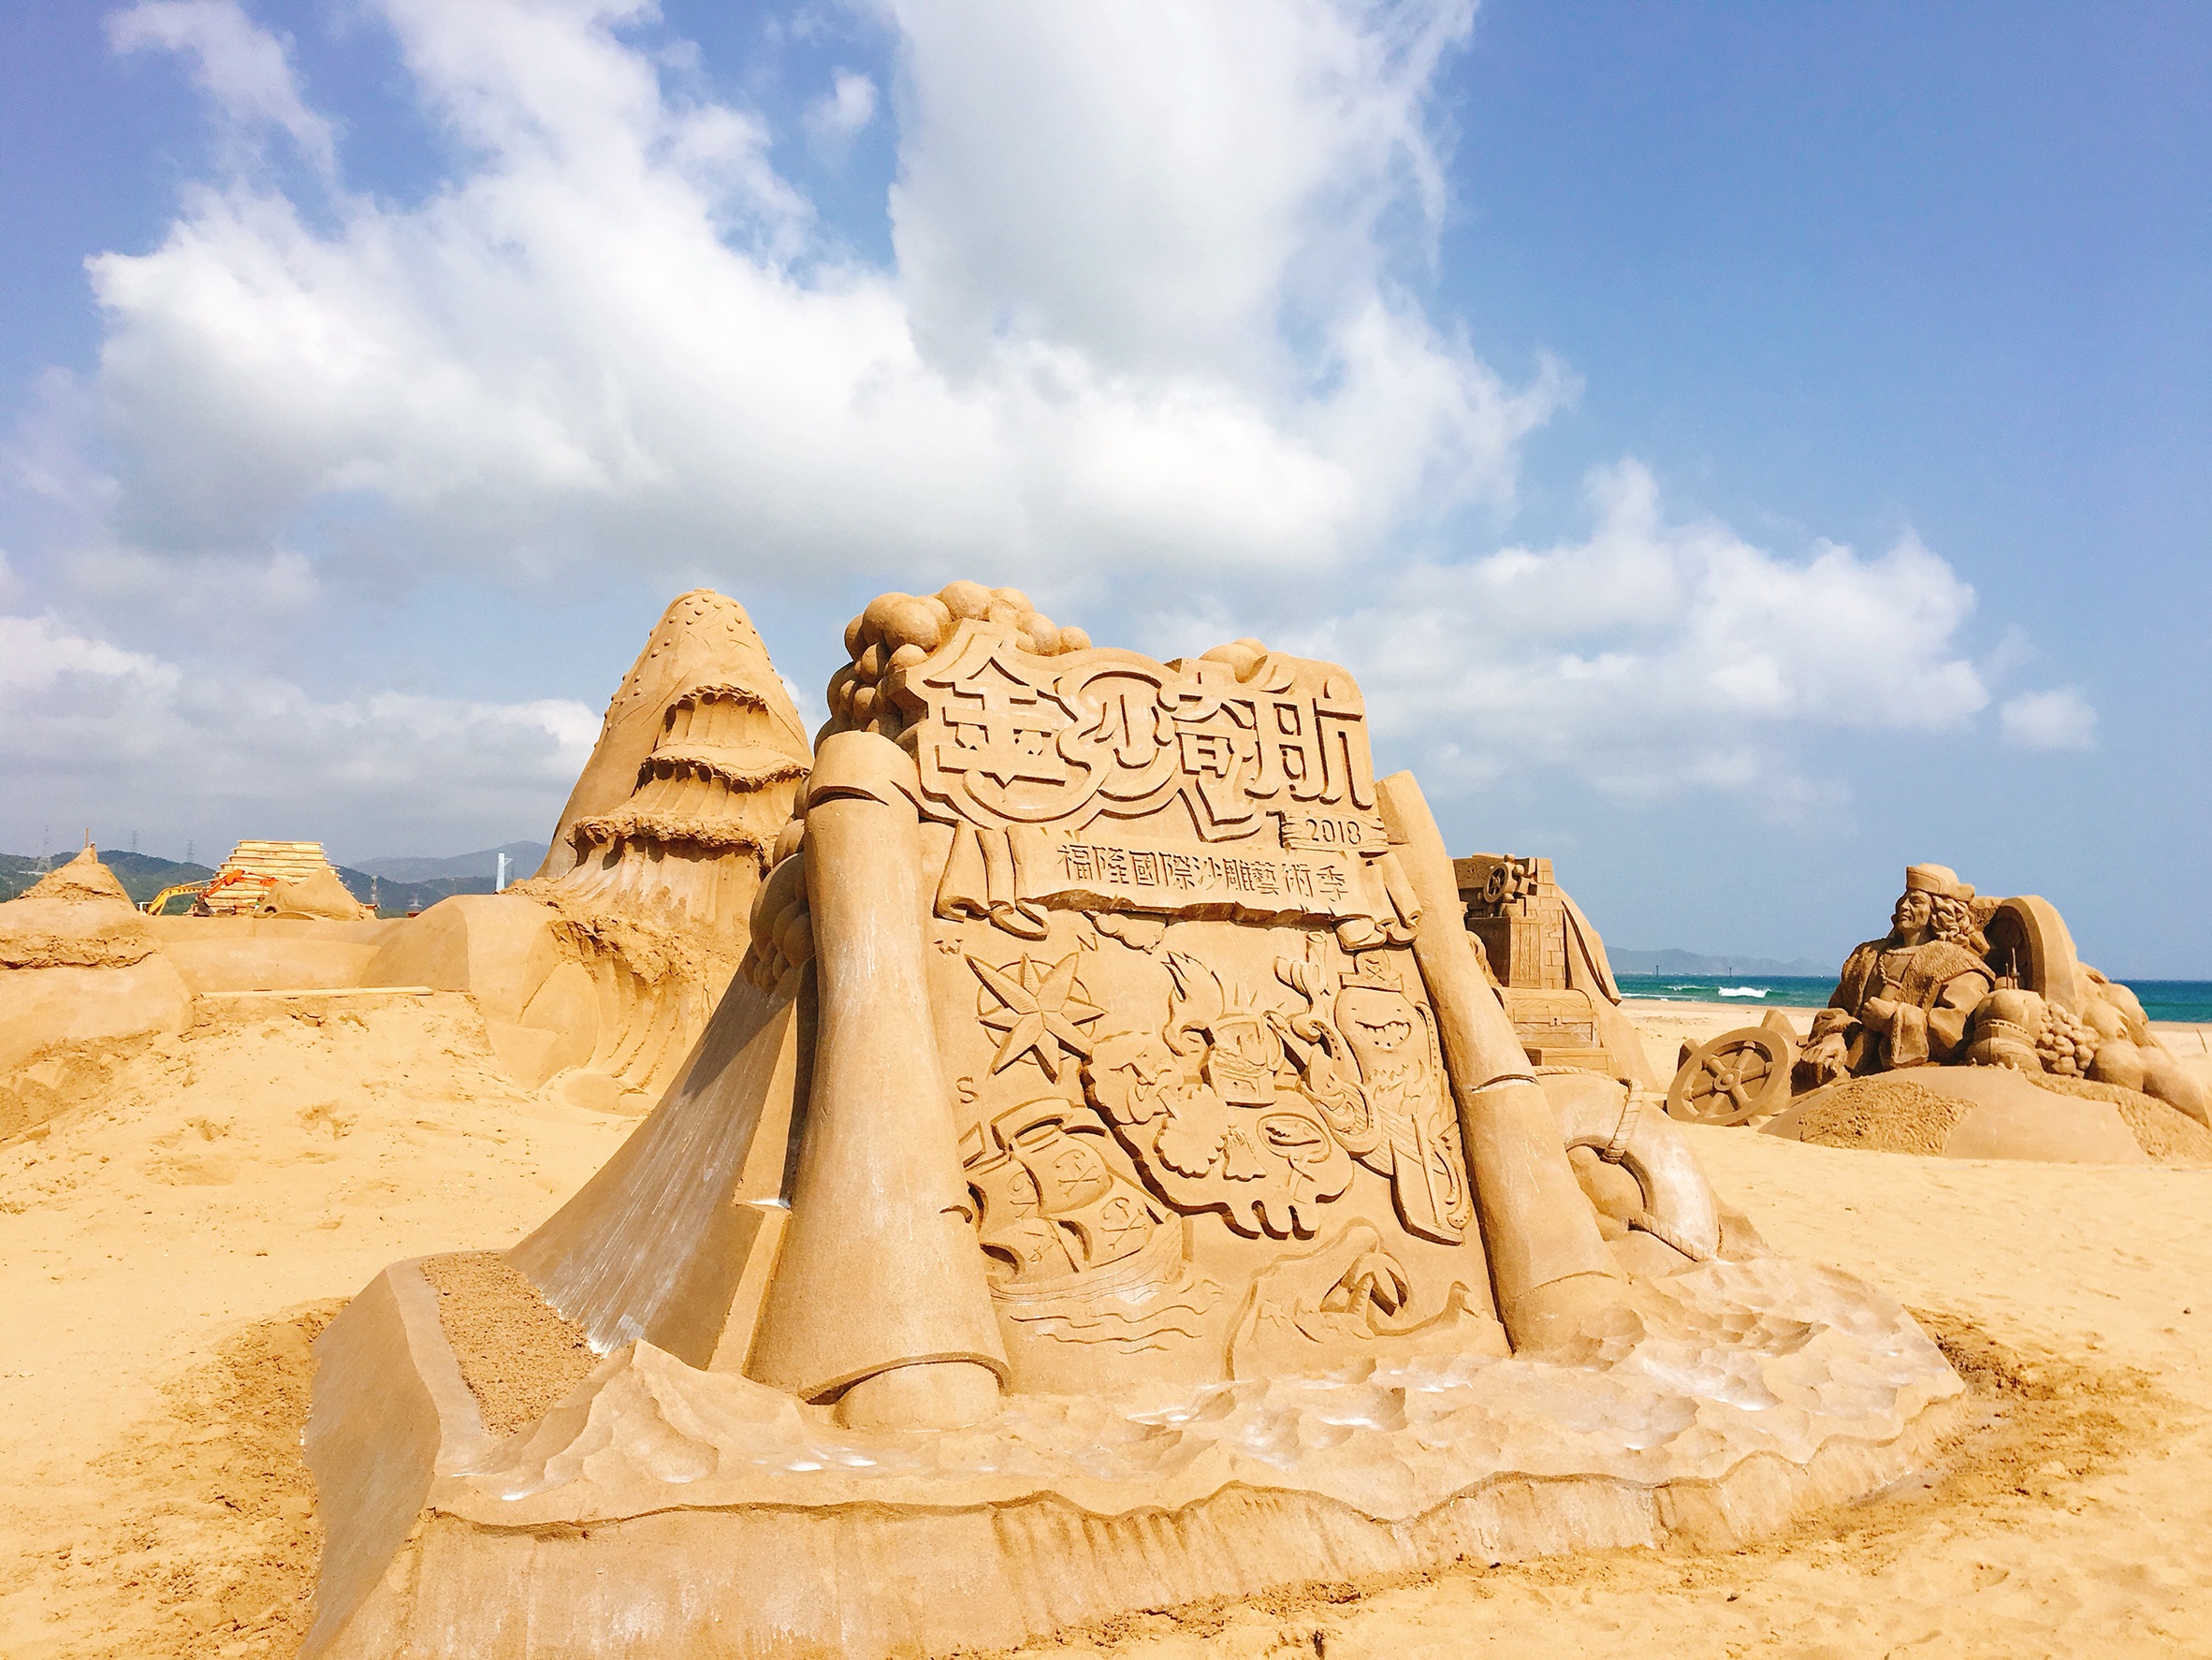 2018 Fulong International Sand Sculpture Art Musim Patung Pasir